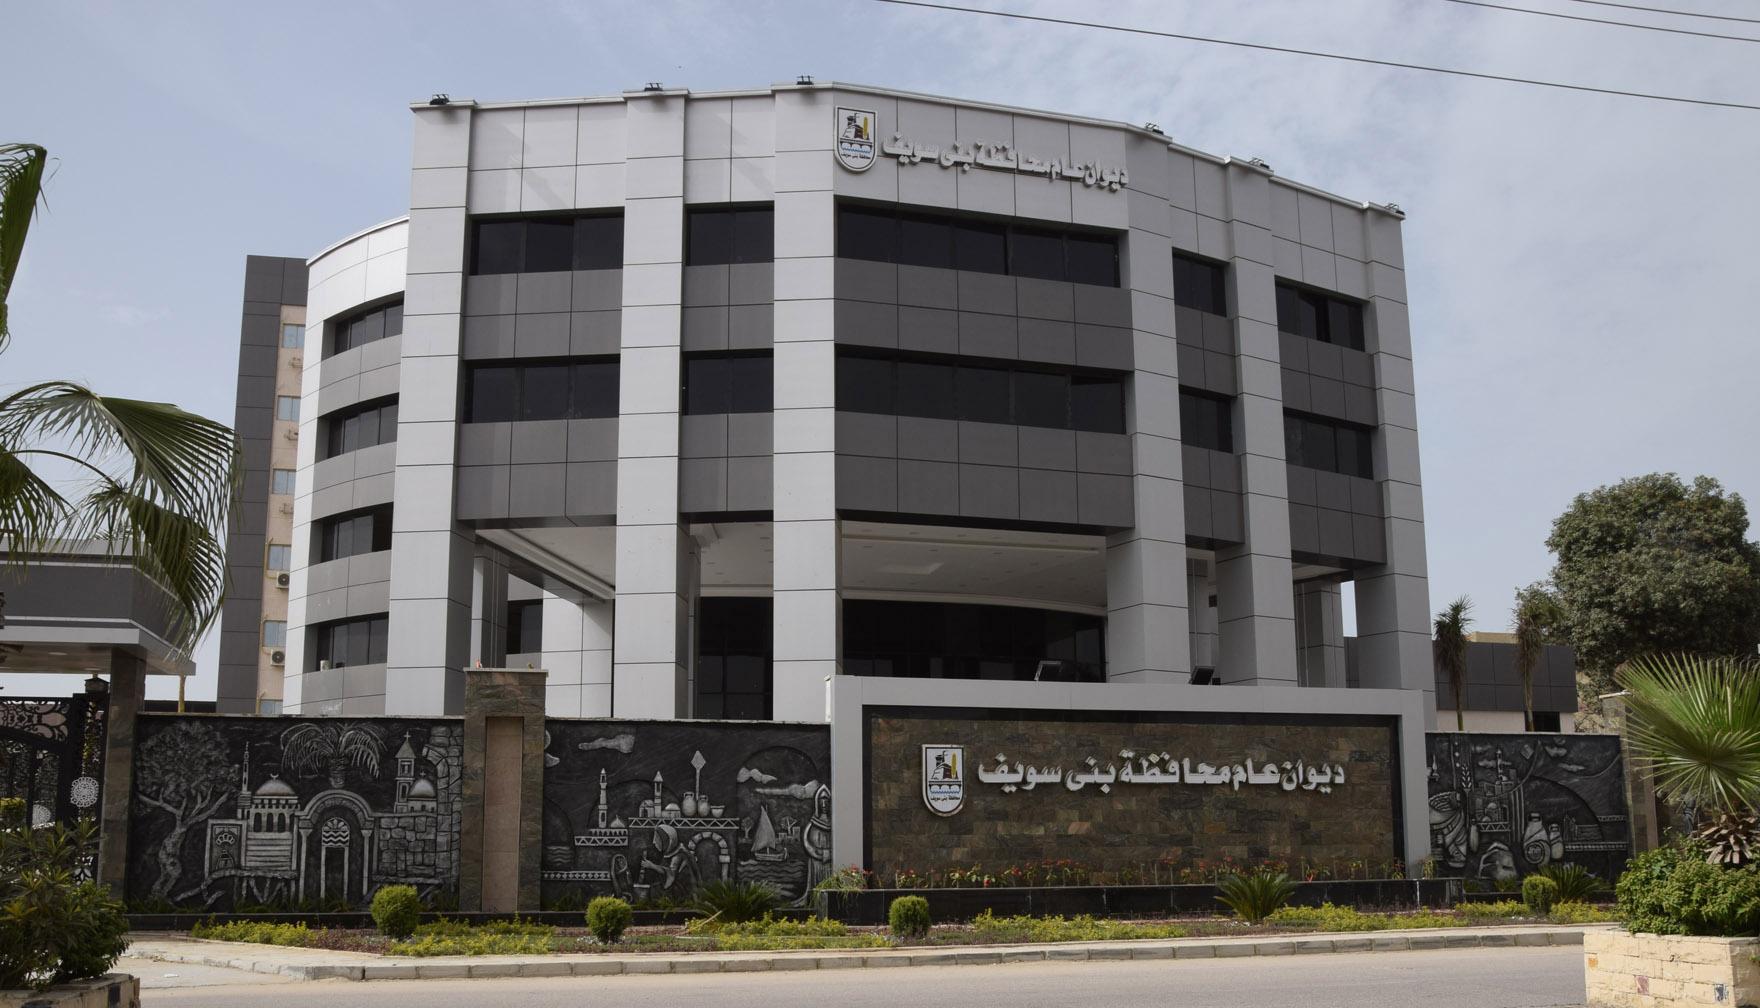   محافظة بني سويف تحذر من التعامل مع الأكاديميات والمراكز العلمية غير القانونية